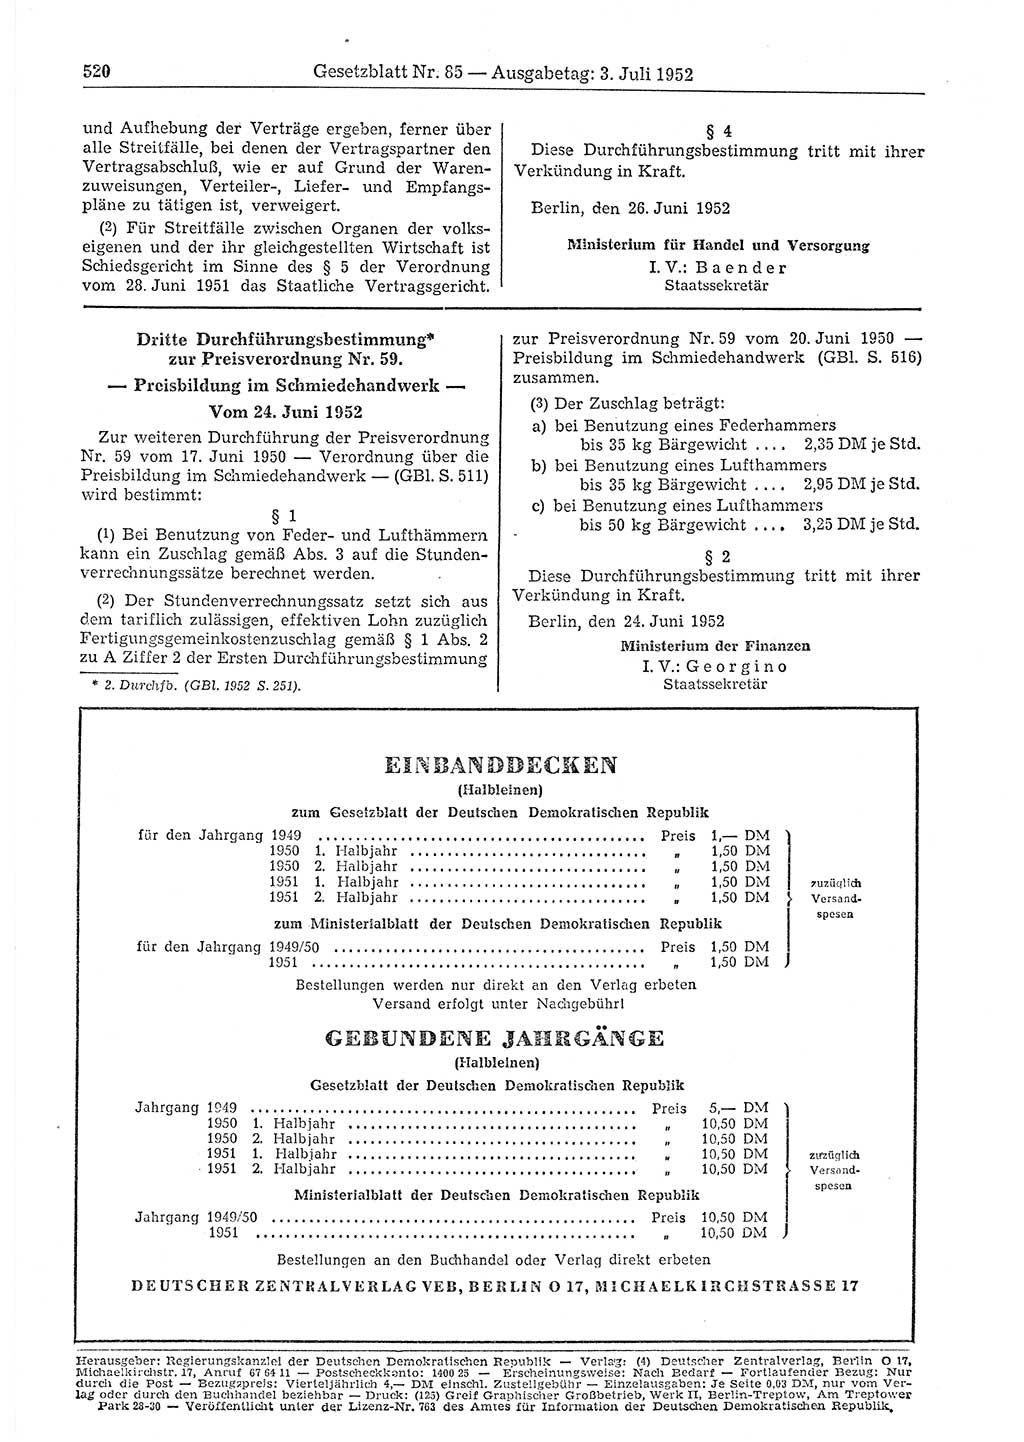 Gesetzblatt (GBl.) der Deutschen Demokratischen Republik (DDR) 1952, Seite 520 (GBl. DDR 1952, S. 520)